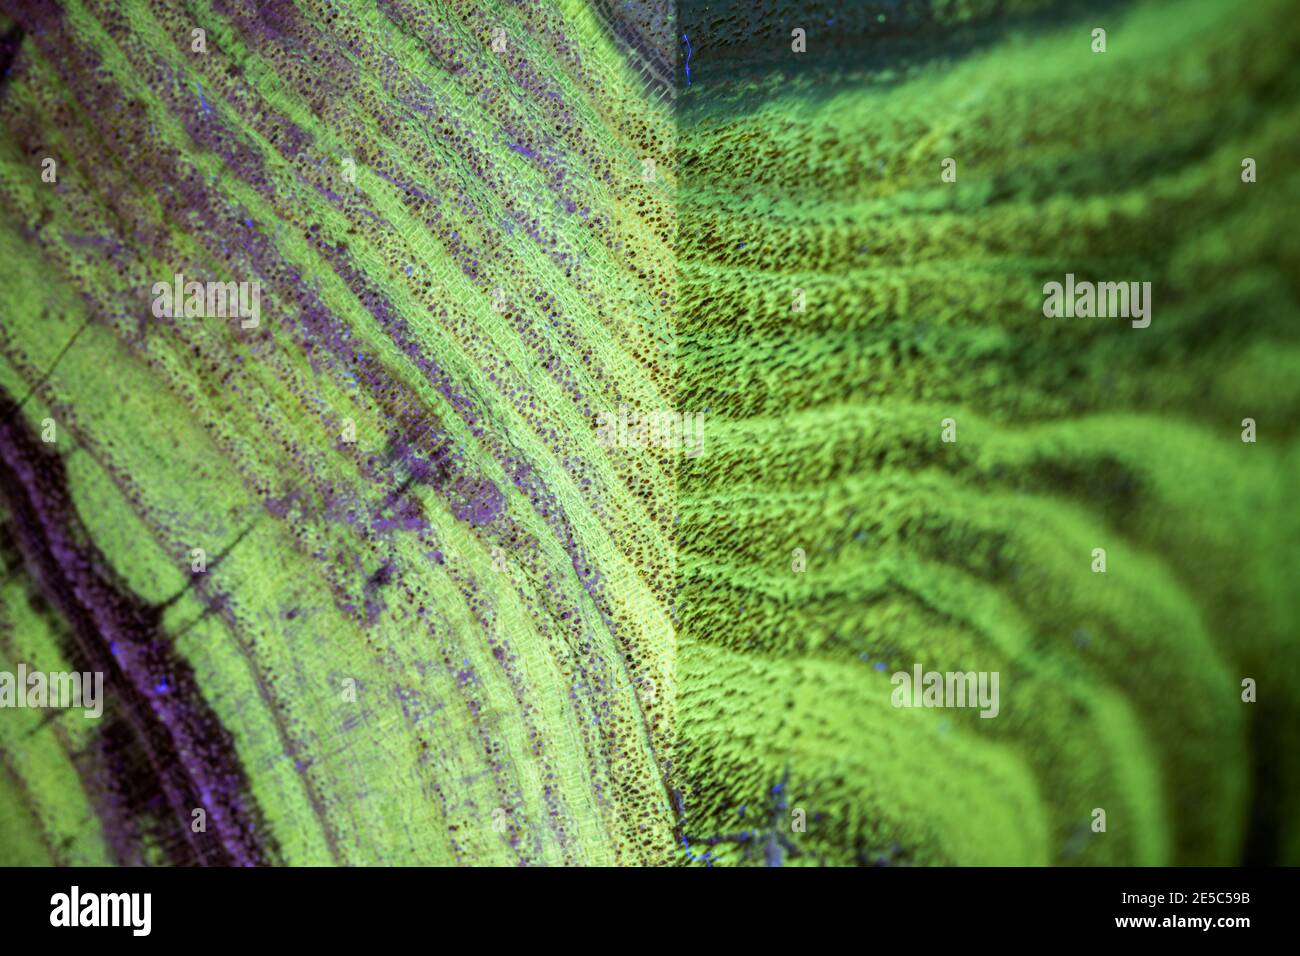 Il grano di legno nero di locusta sotto la luce UV, che mostra la fluorescenza verde caratteristica. Dettaglio dello spigolo. Foto Stock